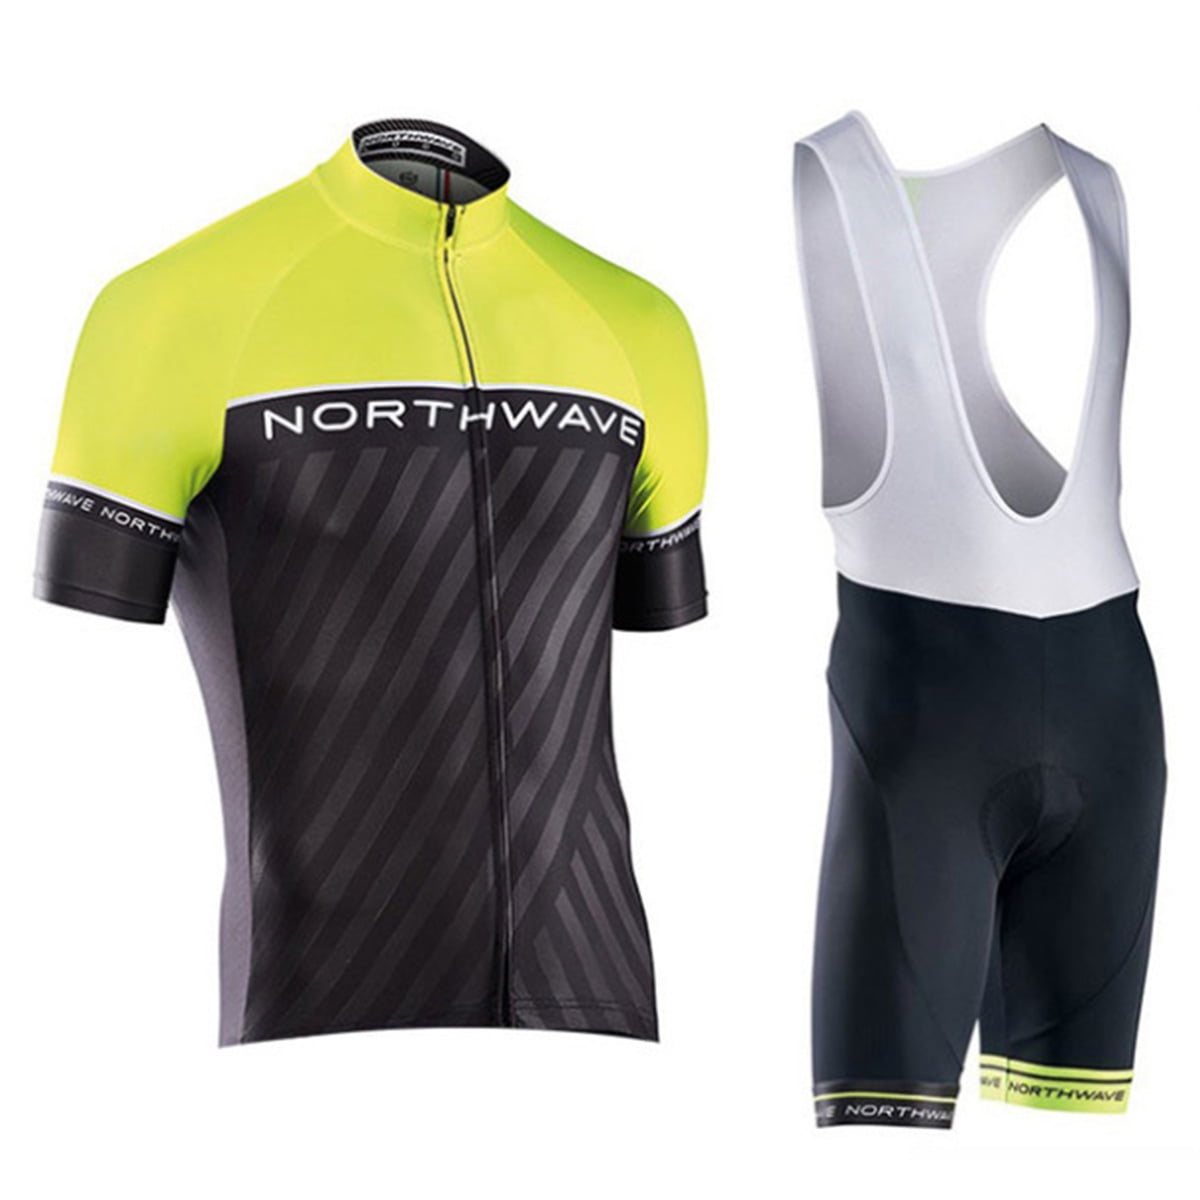 New Short Men's Cycling Clothing Kits Jersey Bib Shorts Set Shirt Maillots Pants 